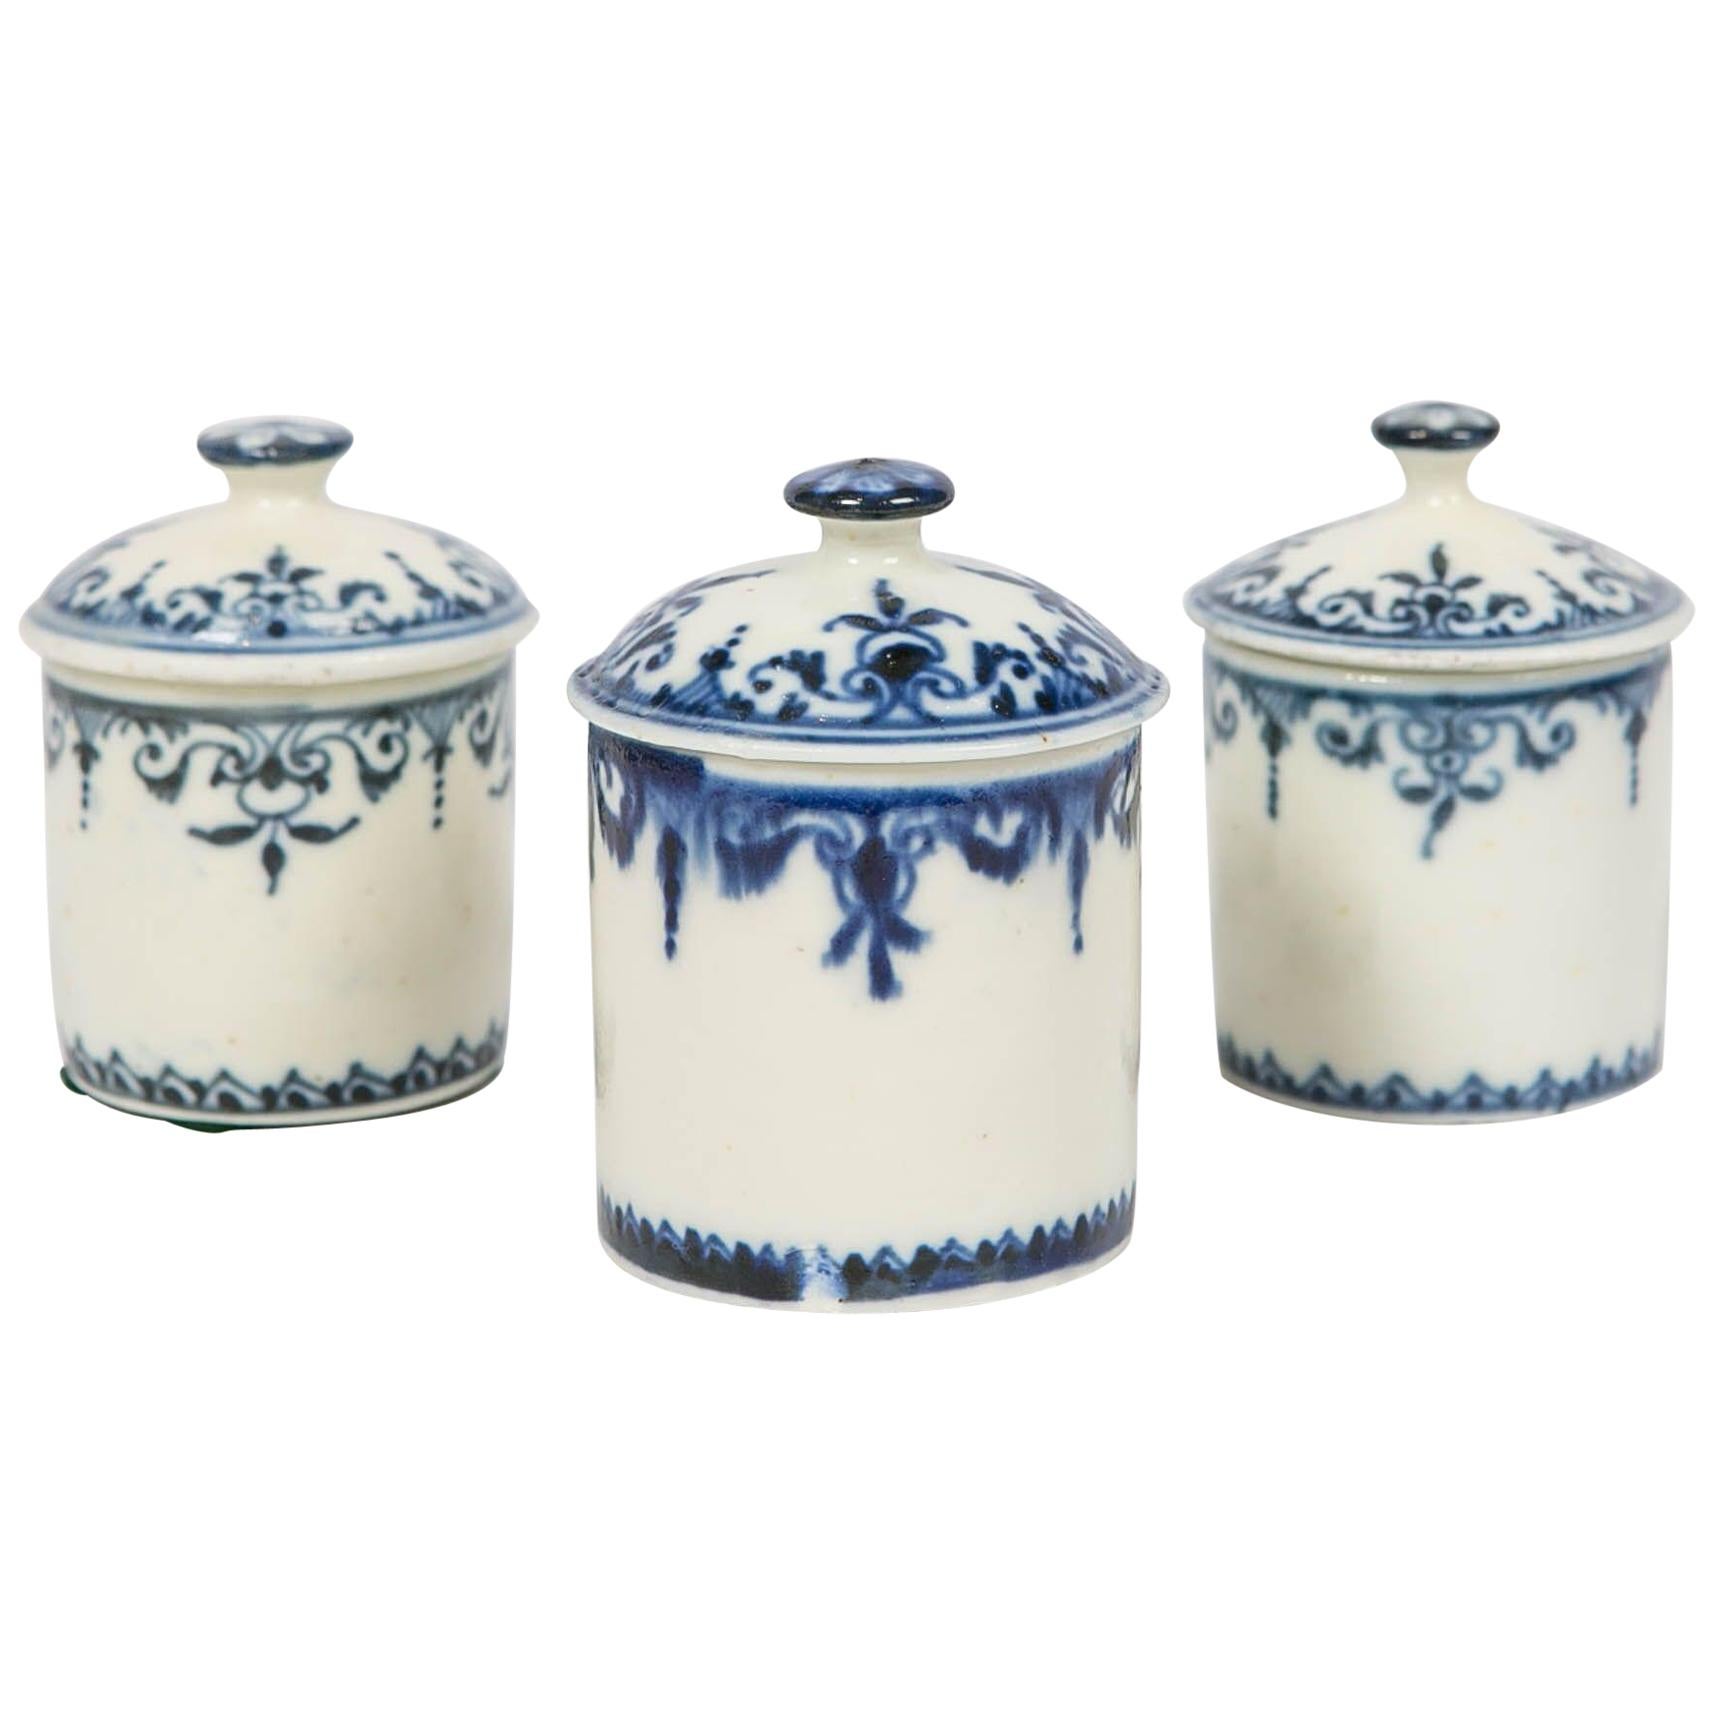 Blue and White Porcelain Jars Set of 3 Antique by Saint-Cloud, France 